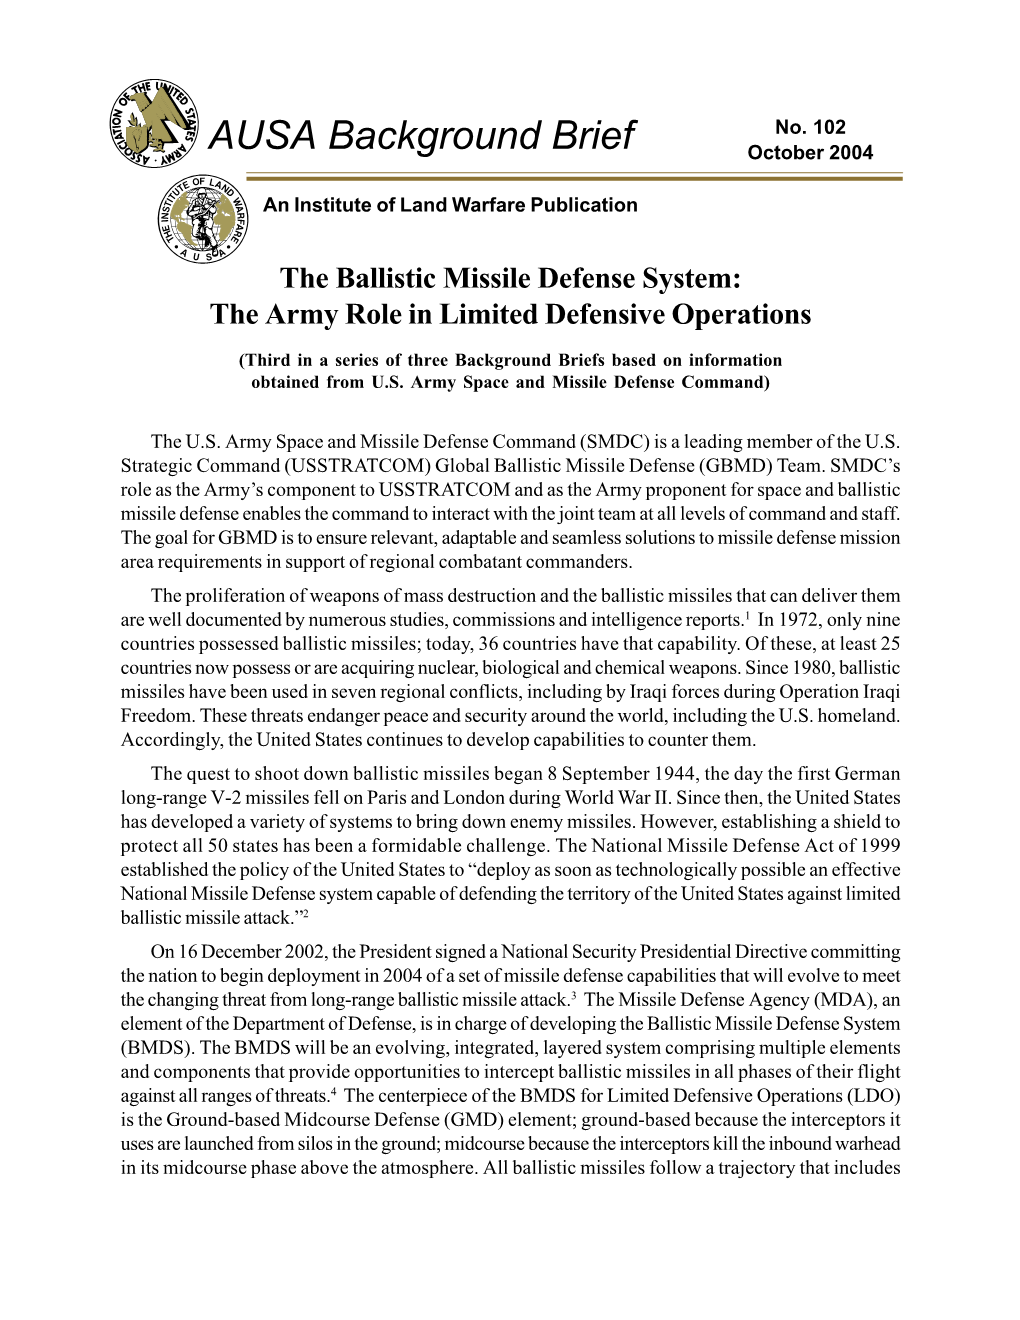 AUSA Background Brief October 2004